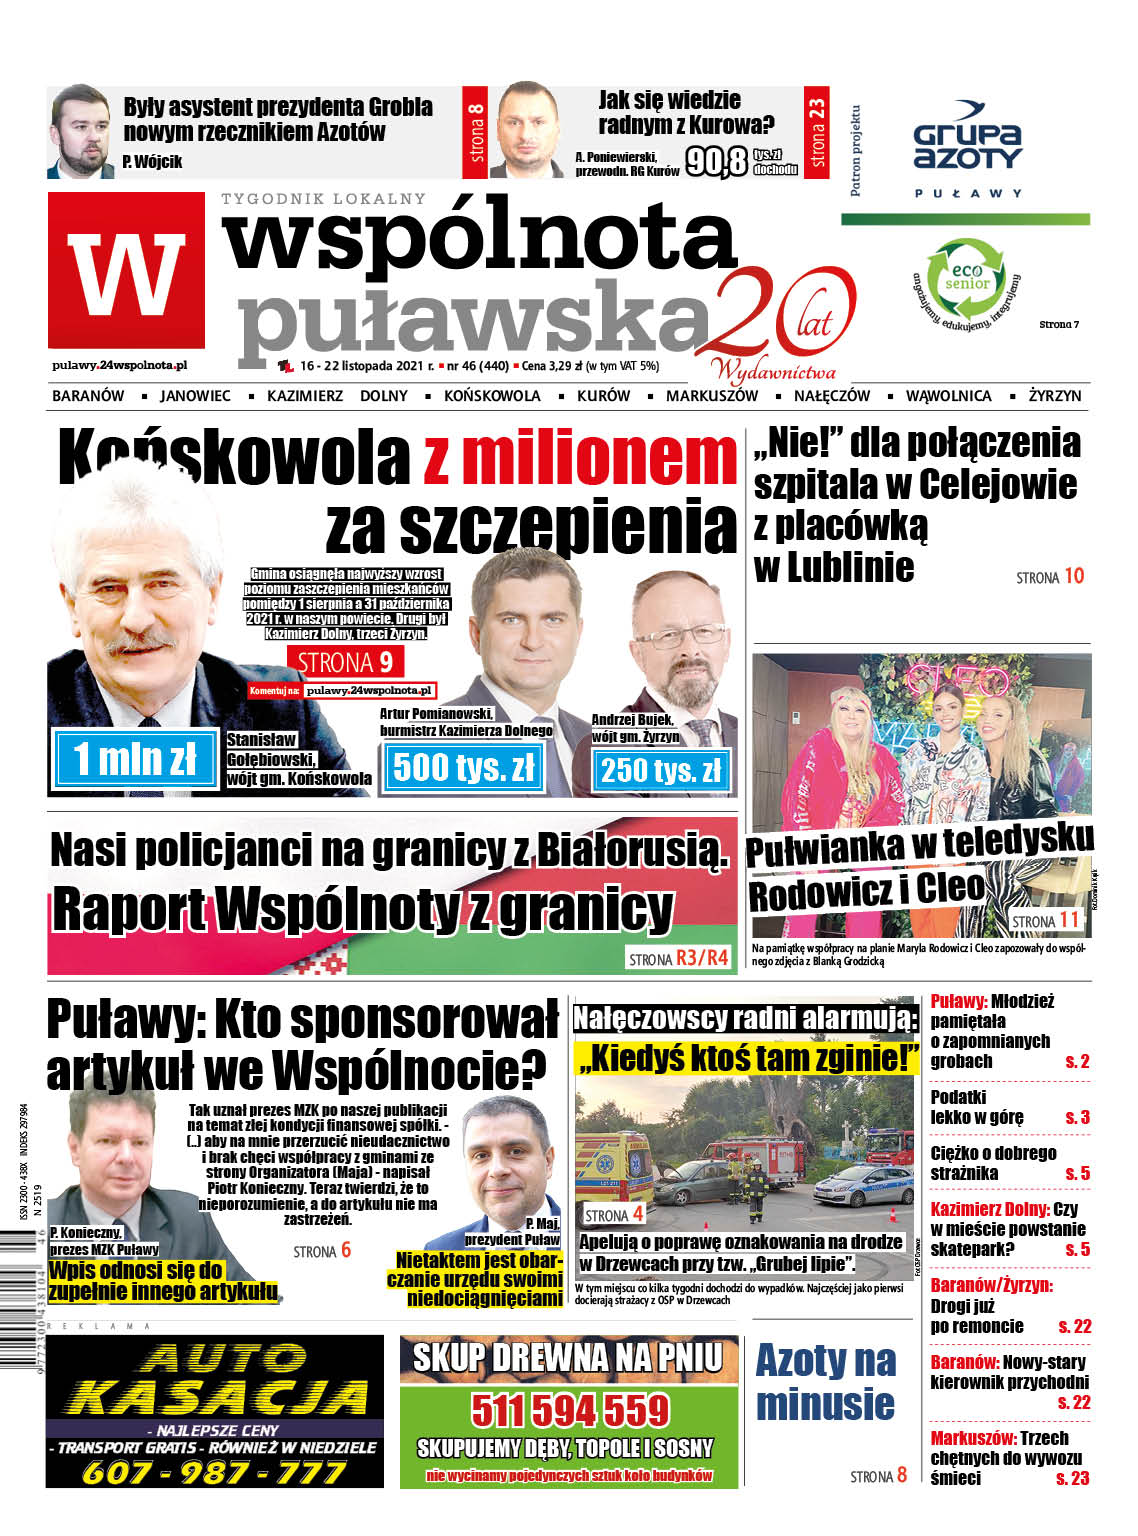 Najnowszy numer Wspólnoty Puławskiej - Zdjęcie główne